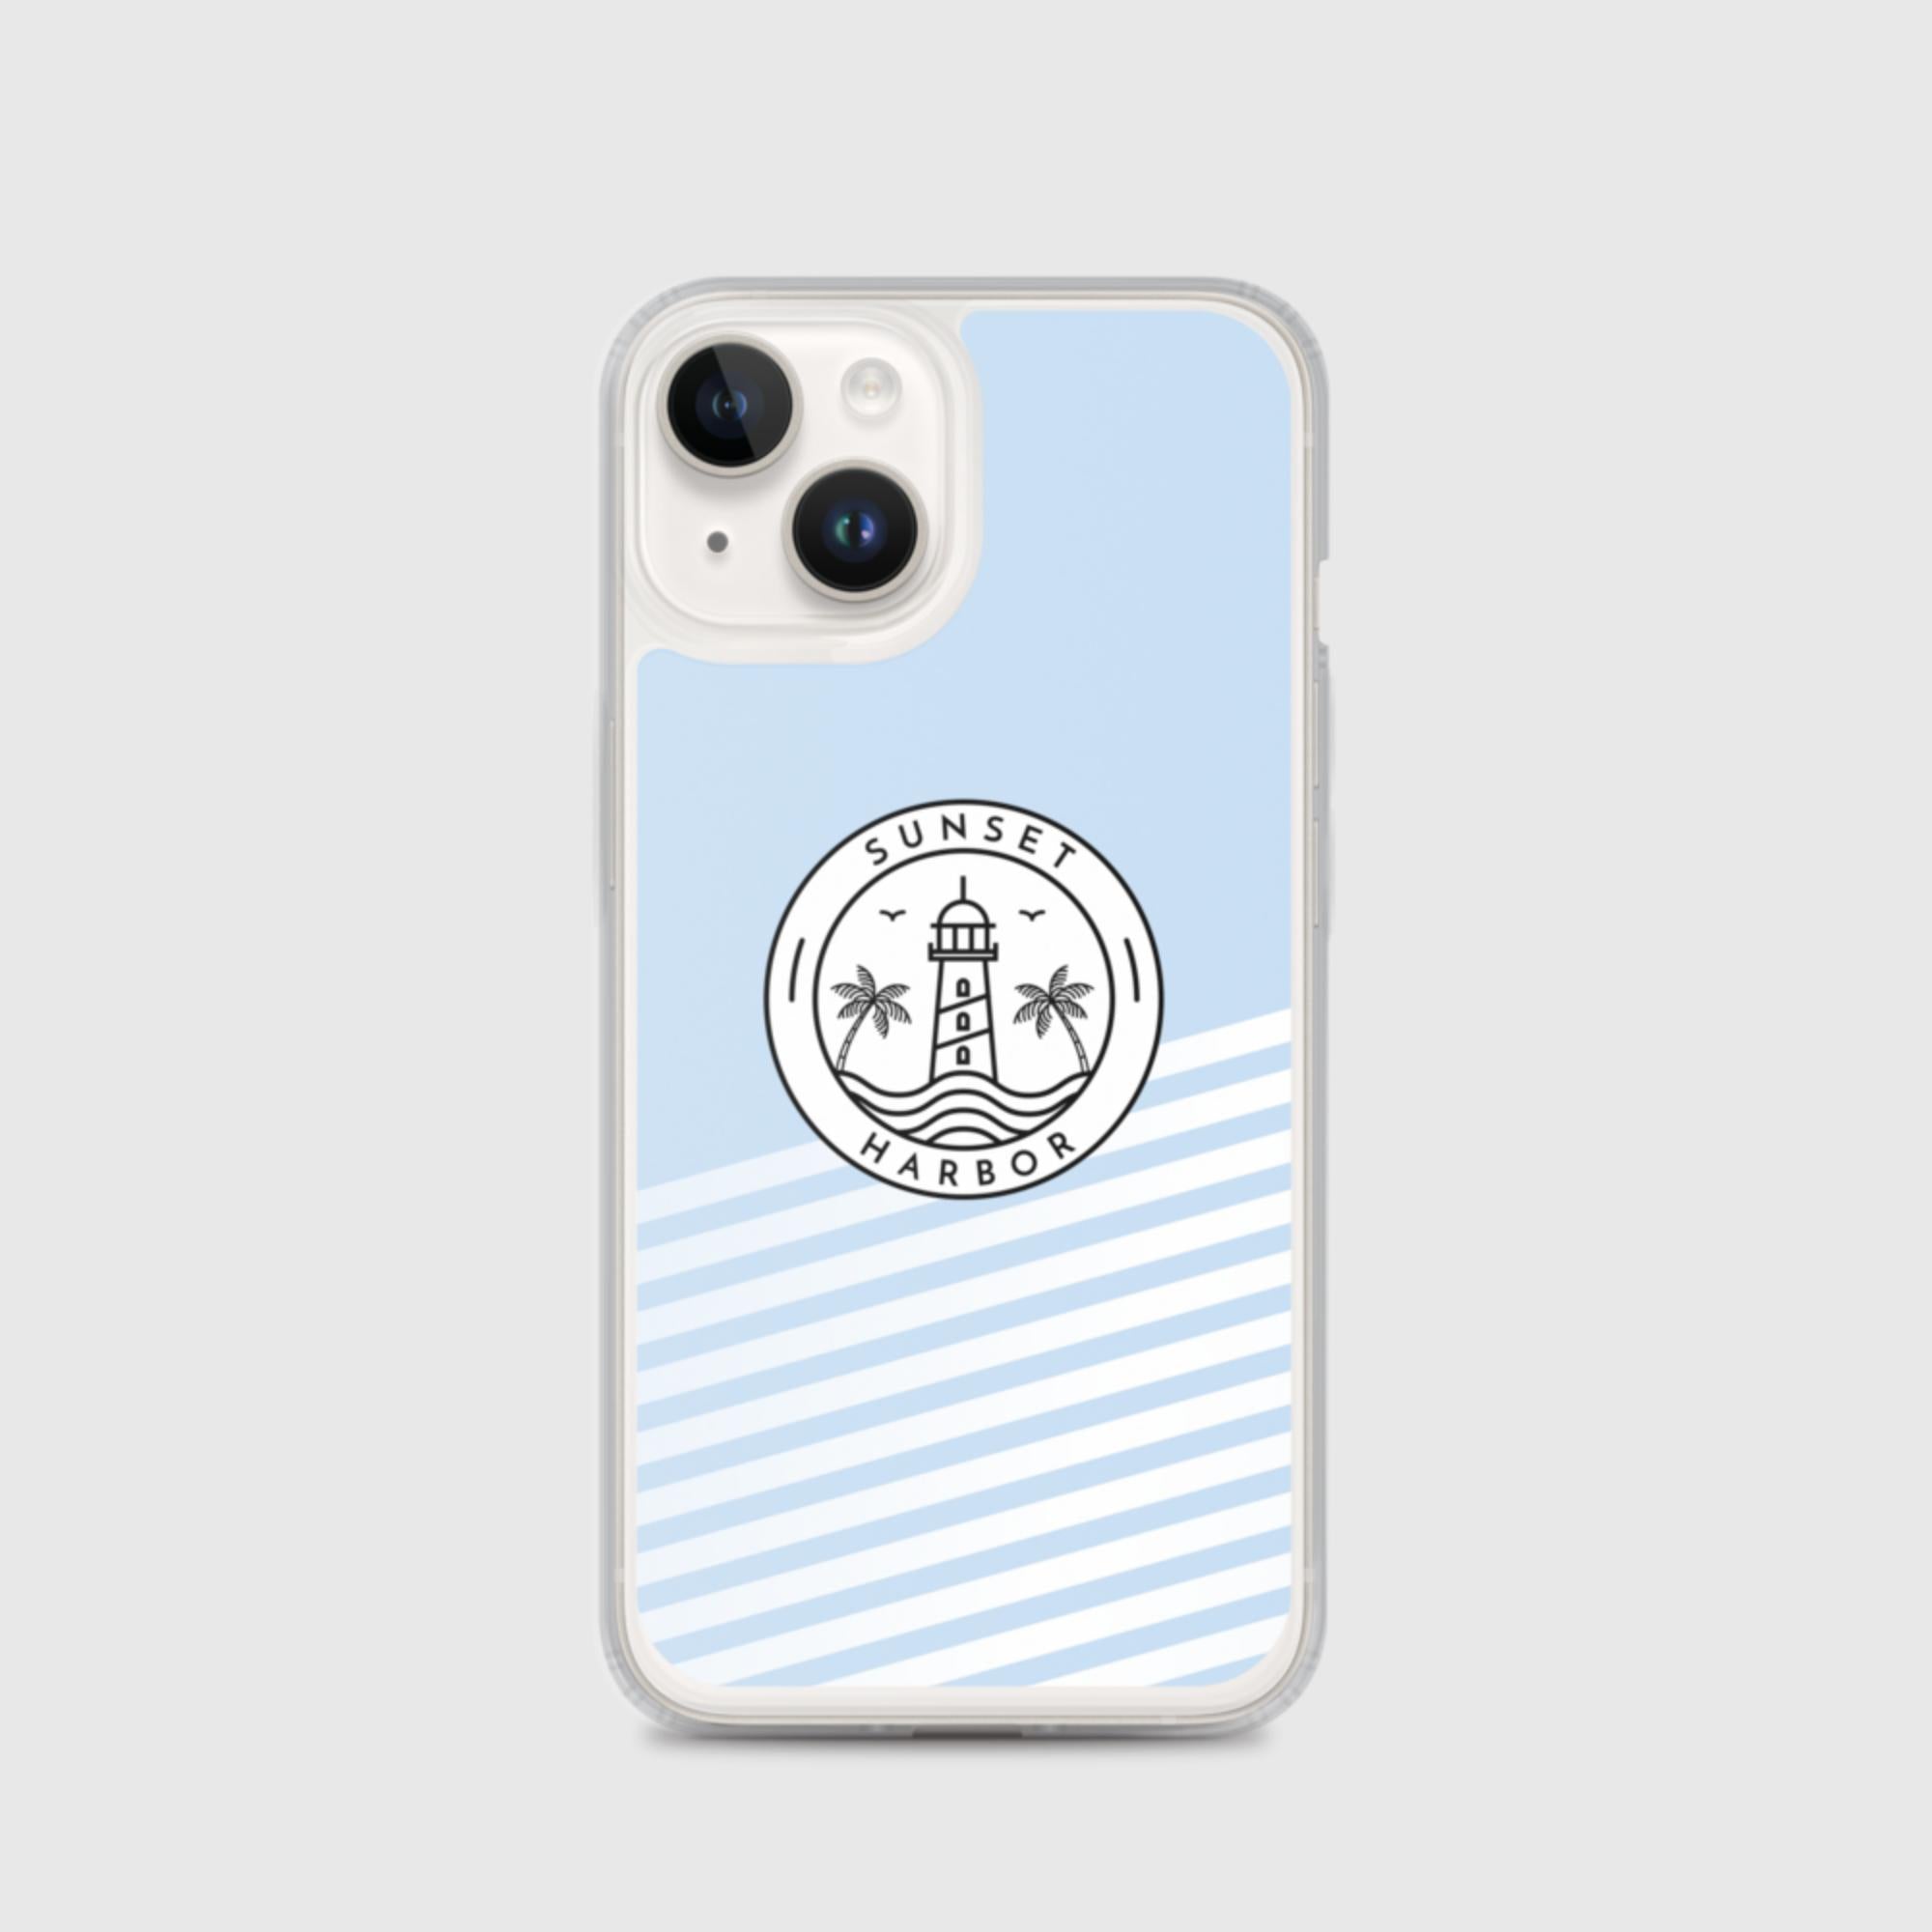 iPhone Case - Logo - Sunset Harbor Clothing